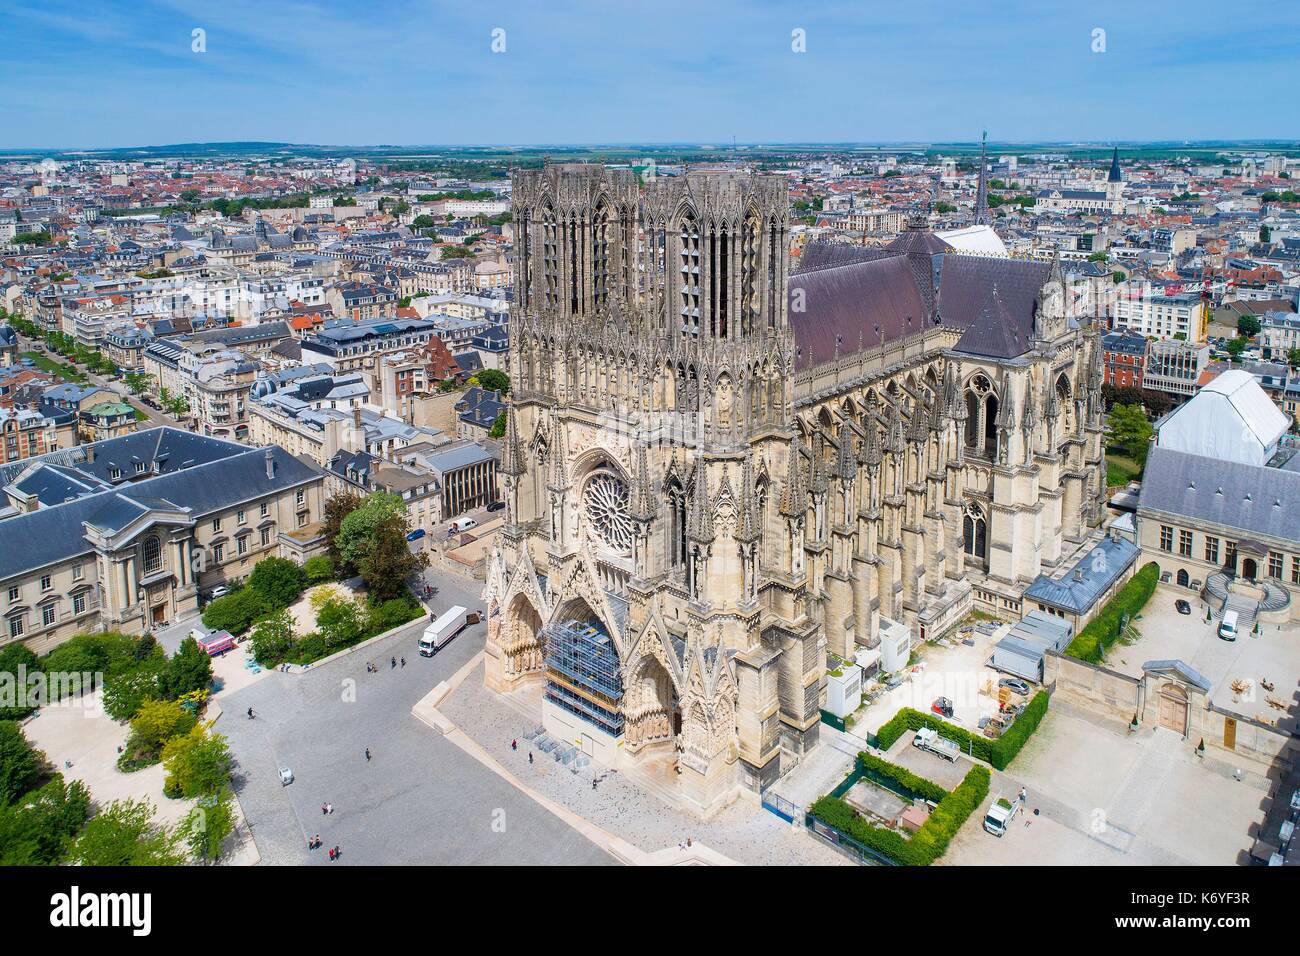 France, Marne, Reims, Notre Dame de la cathédrale de Reims, inscrite au Patrimoine Mondial de l'UNESCO Banque D'Images